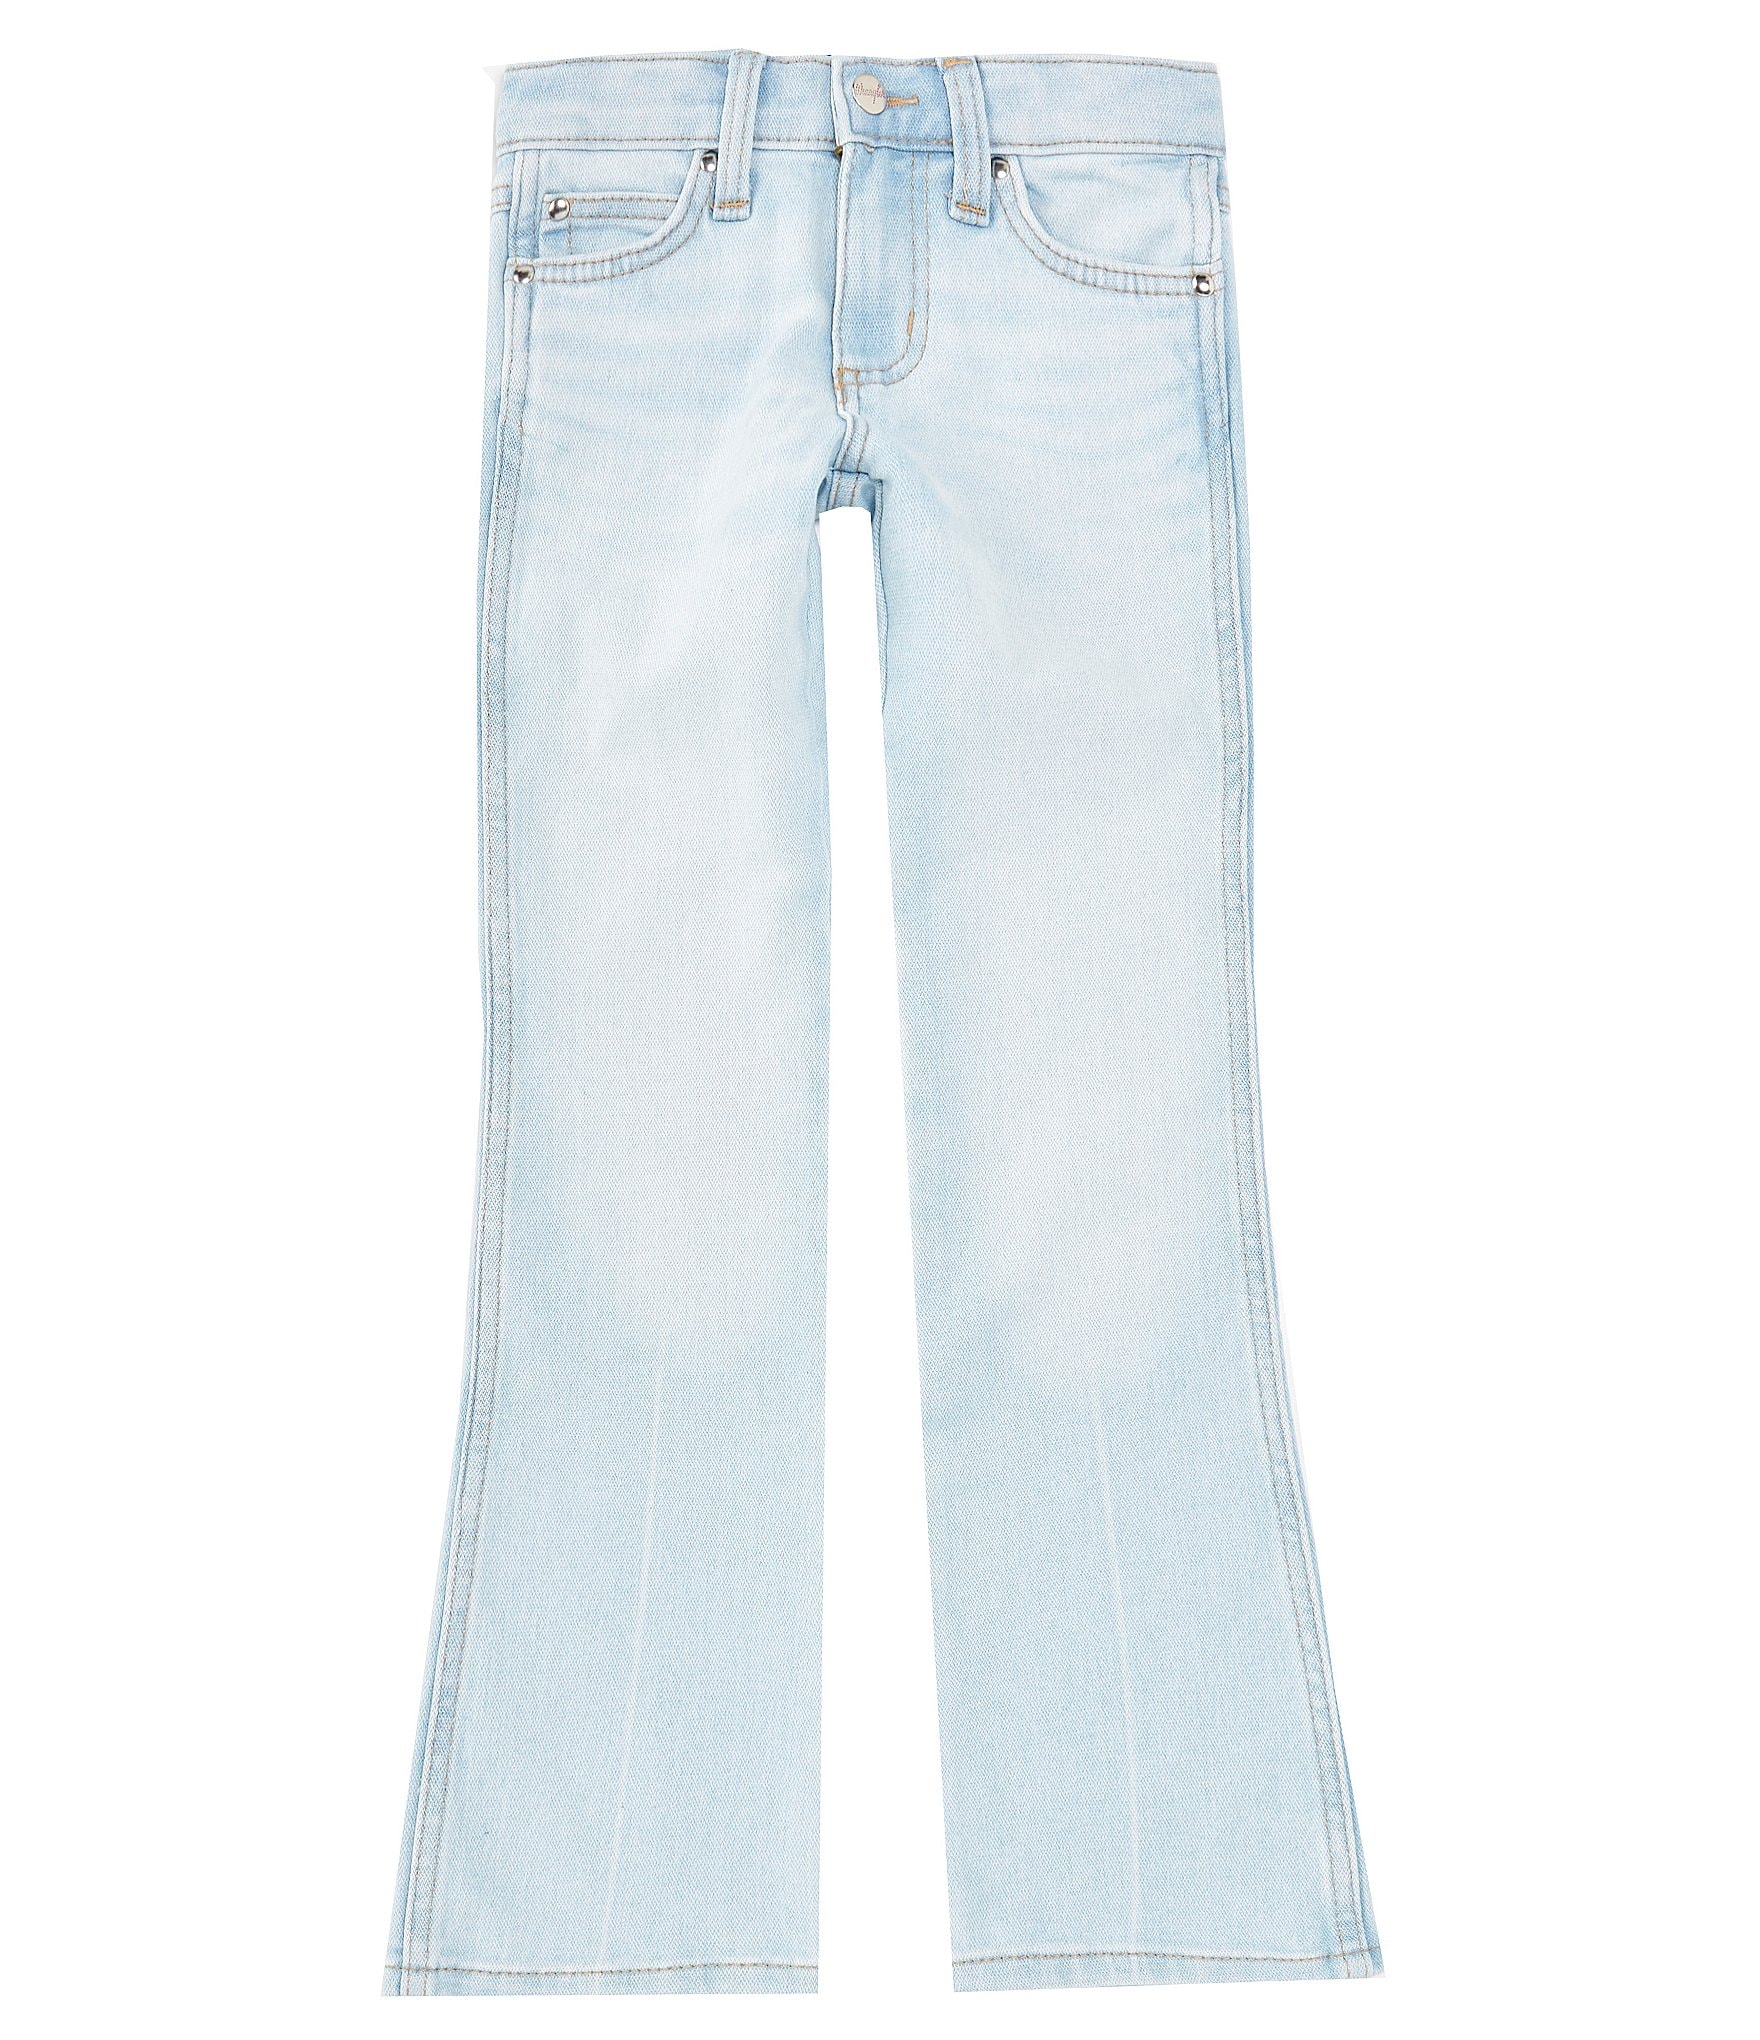 sale jean: Girls' Jeans 7-16